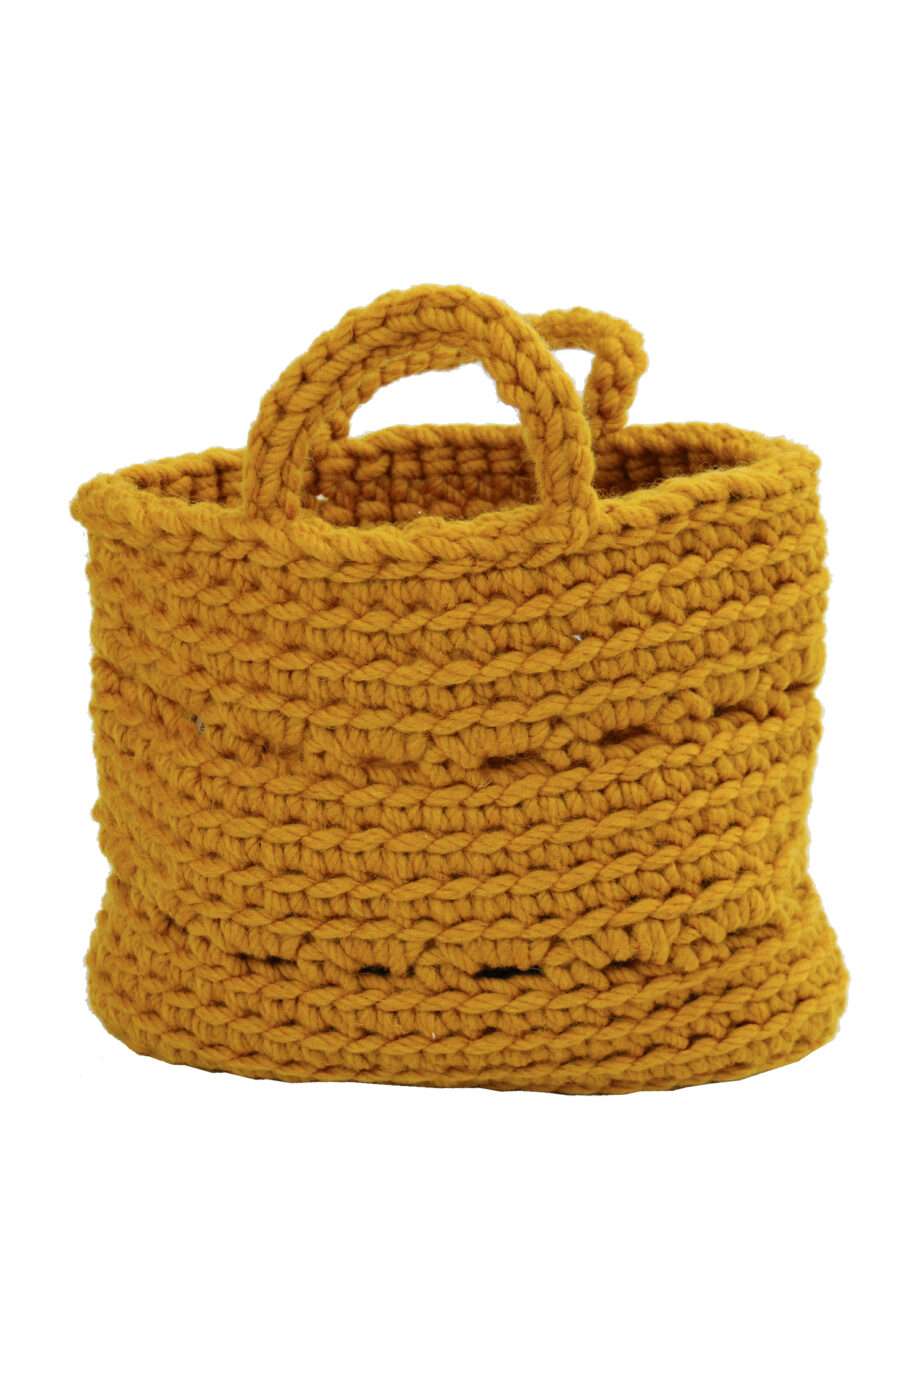 basic ochre crochet woolen basket small